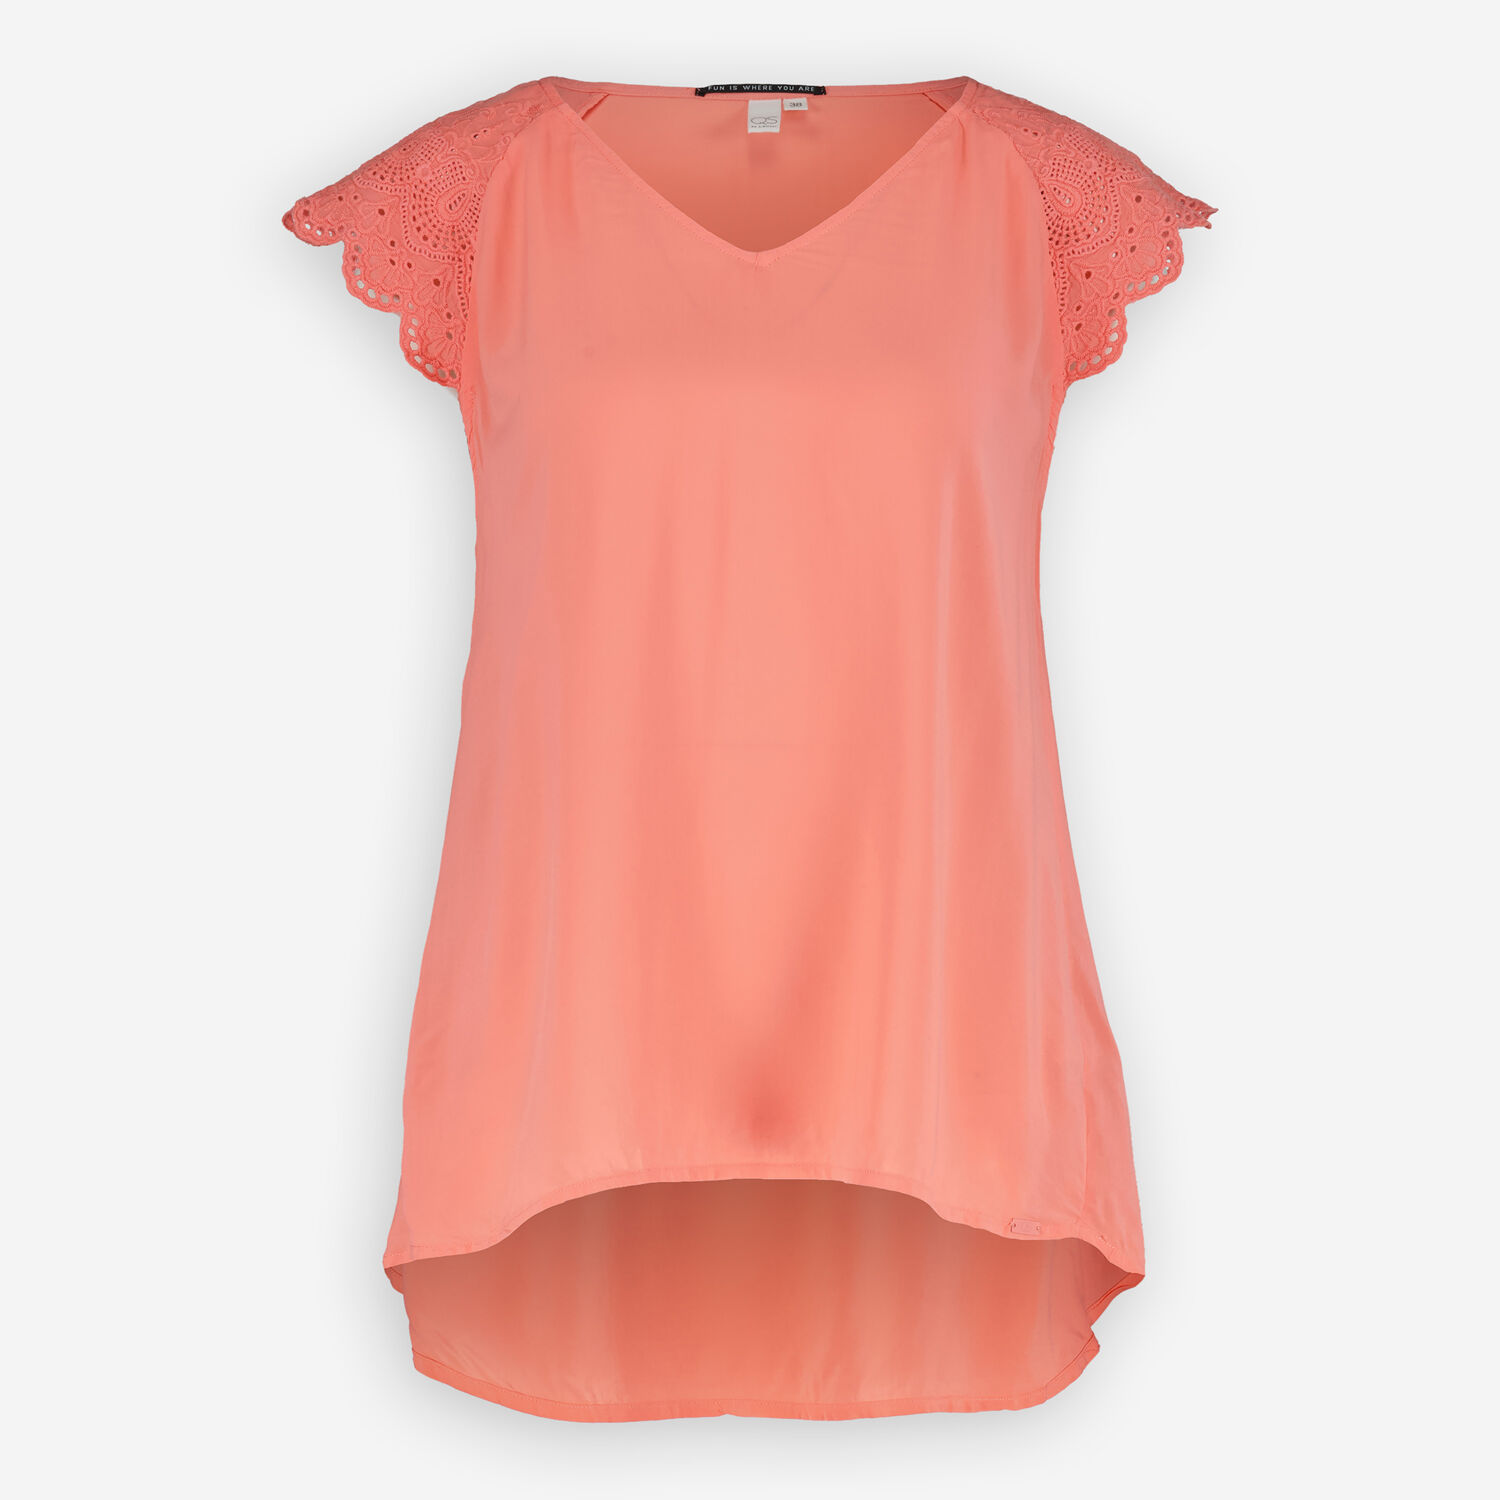 Розовая блузка без рукавов с вышивкой на плечах QS by s. Oliver футболка qs by s oliver артикул 50 2 51 12 130 2127900 цвет lilac pink 41d0 размер xl